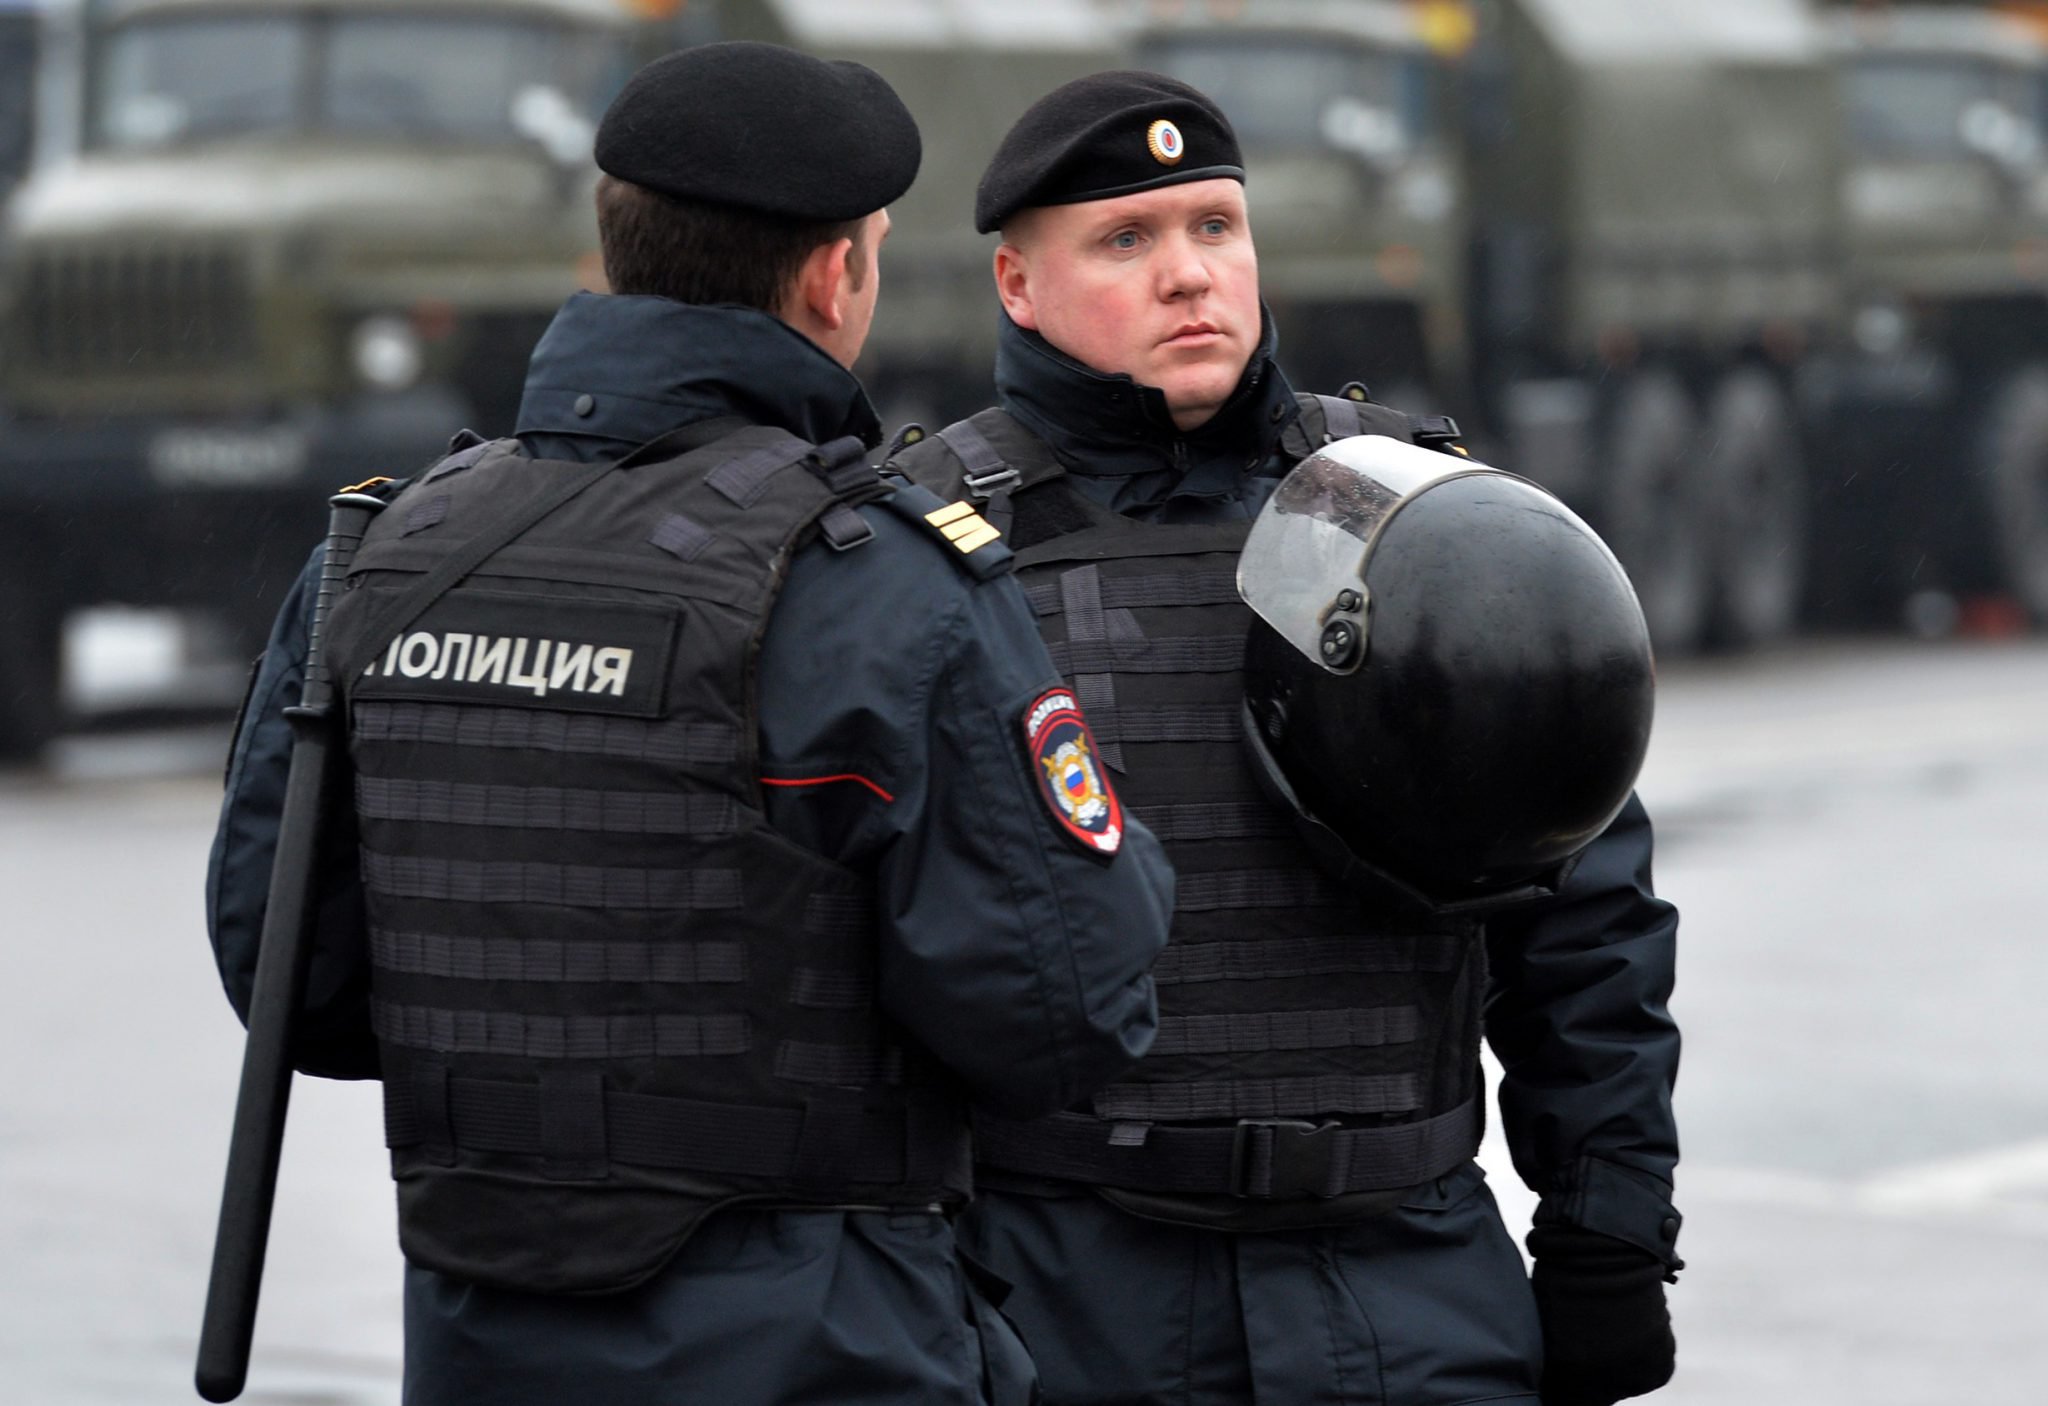 Внимание, в Калининграде полиция предупреждает об ответственности за участие в несанкционированных акциях